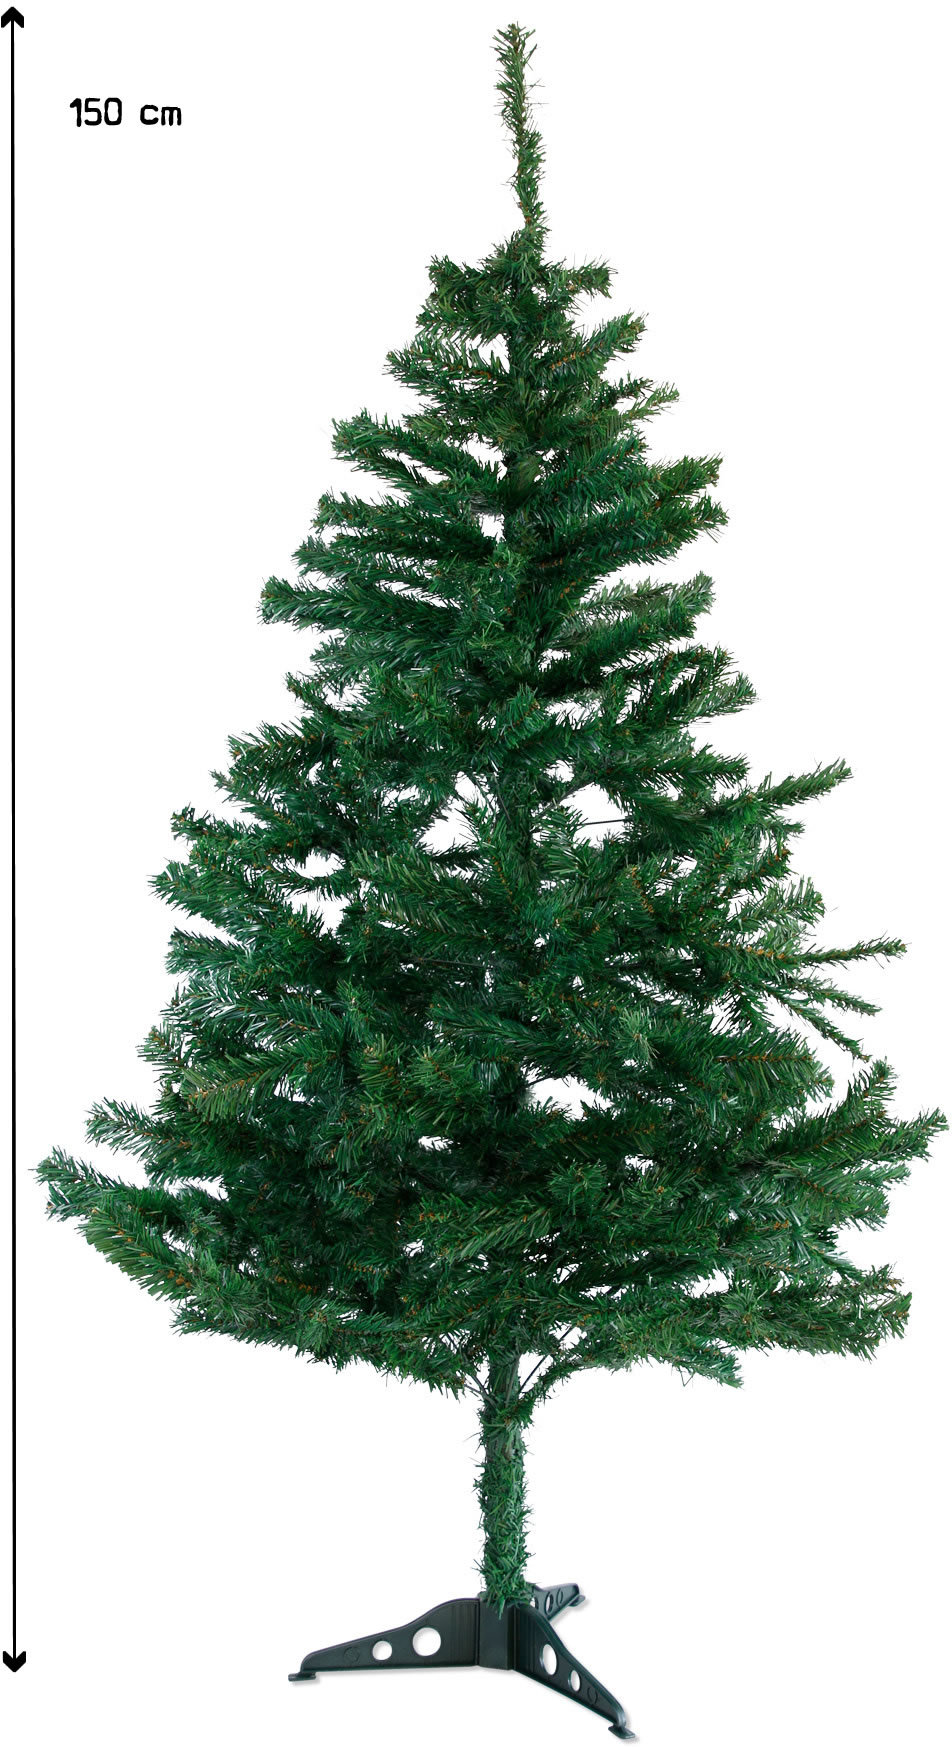 150cm künstlicher Weihnachtsbaum Christbaum Tannenbaum mit Metallständer, Schneller Montage und Faltung (150cm, Grün PVC)